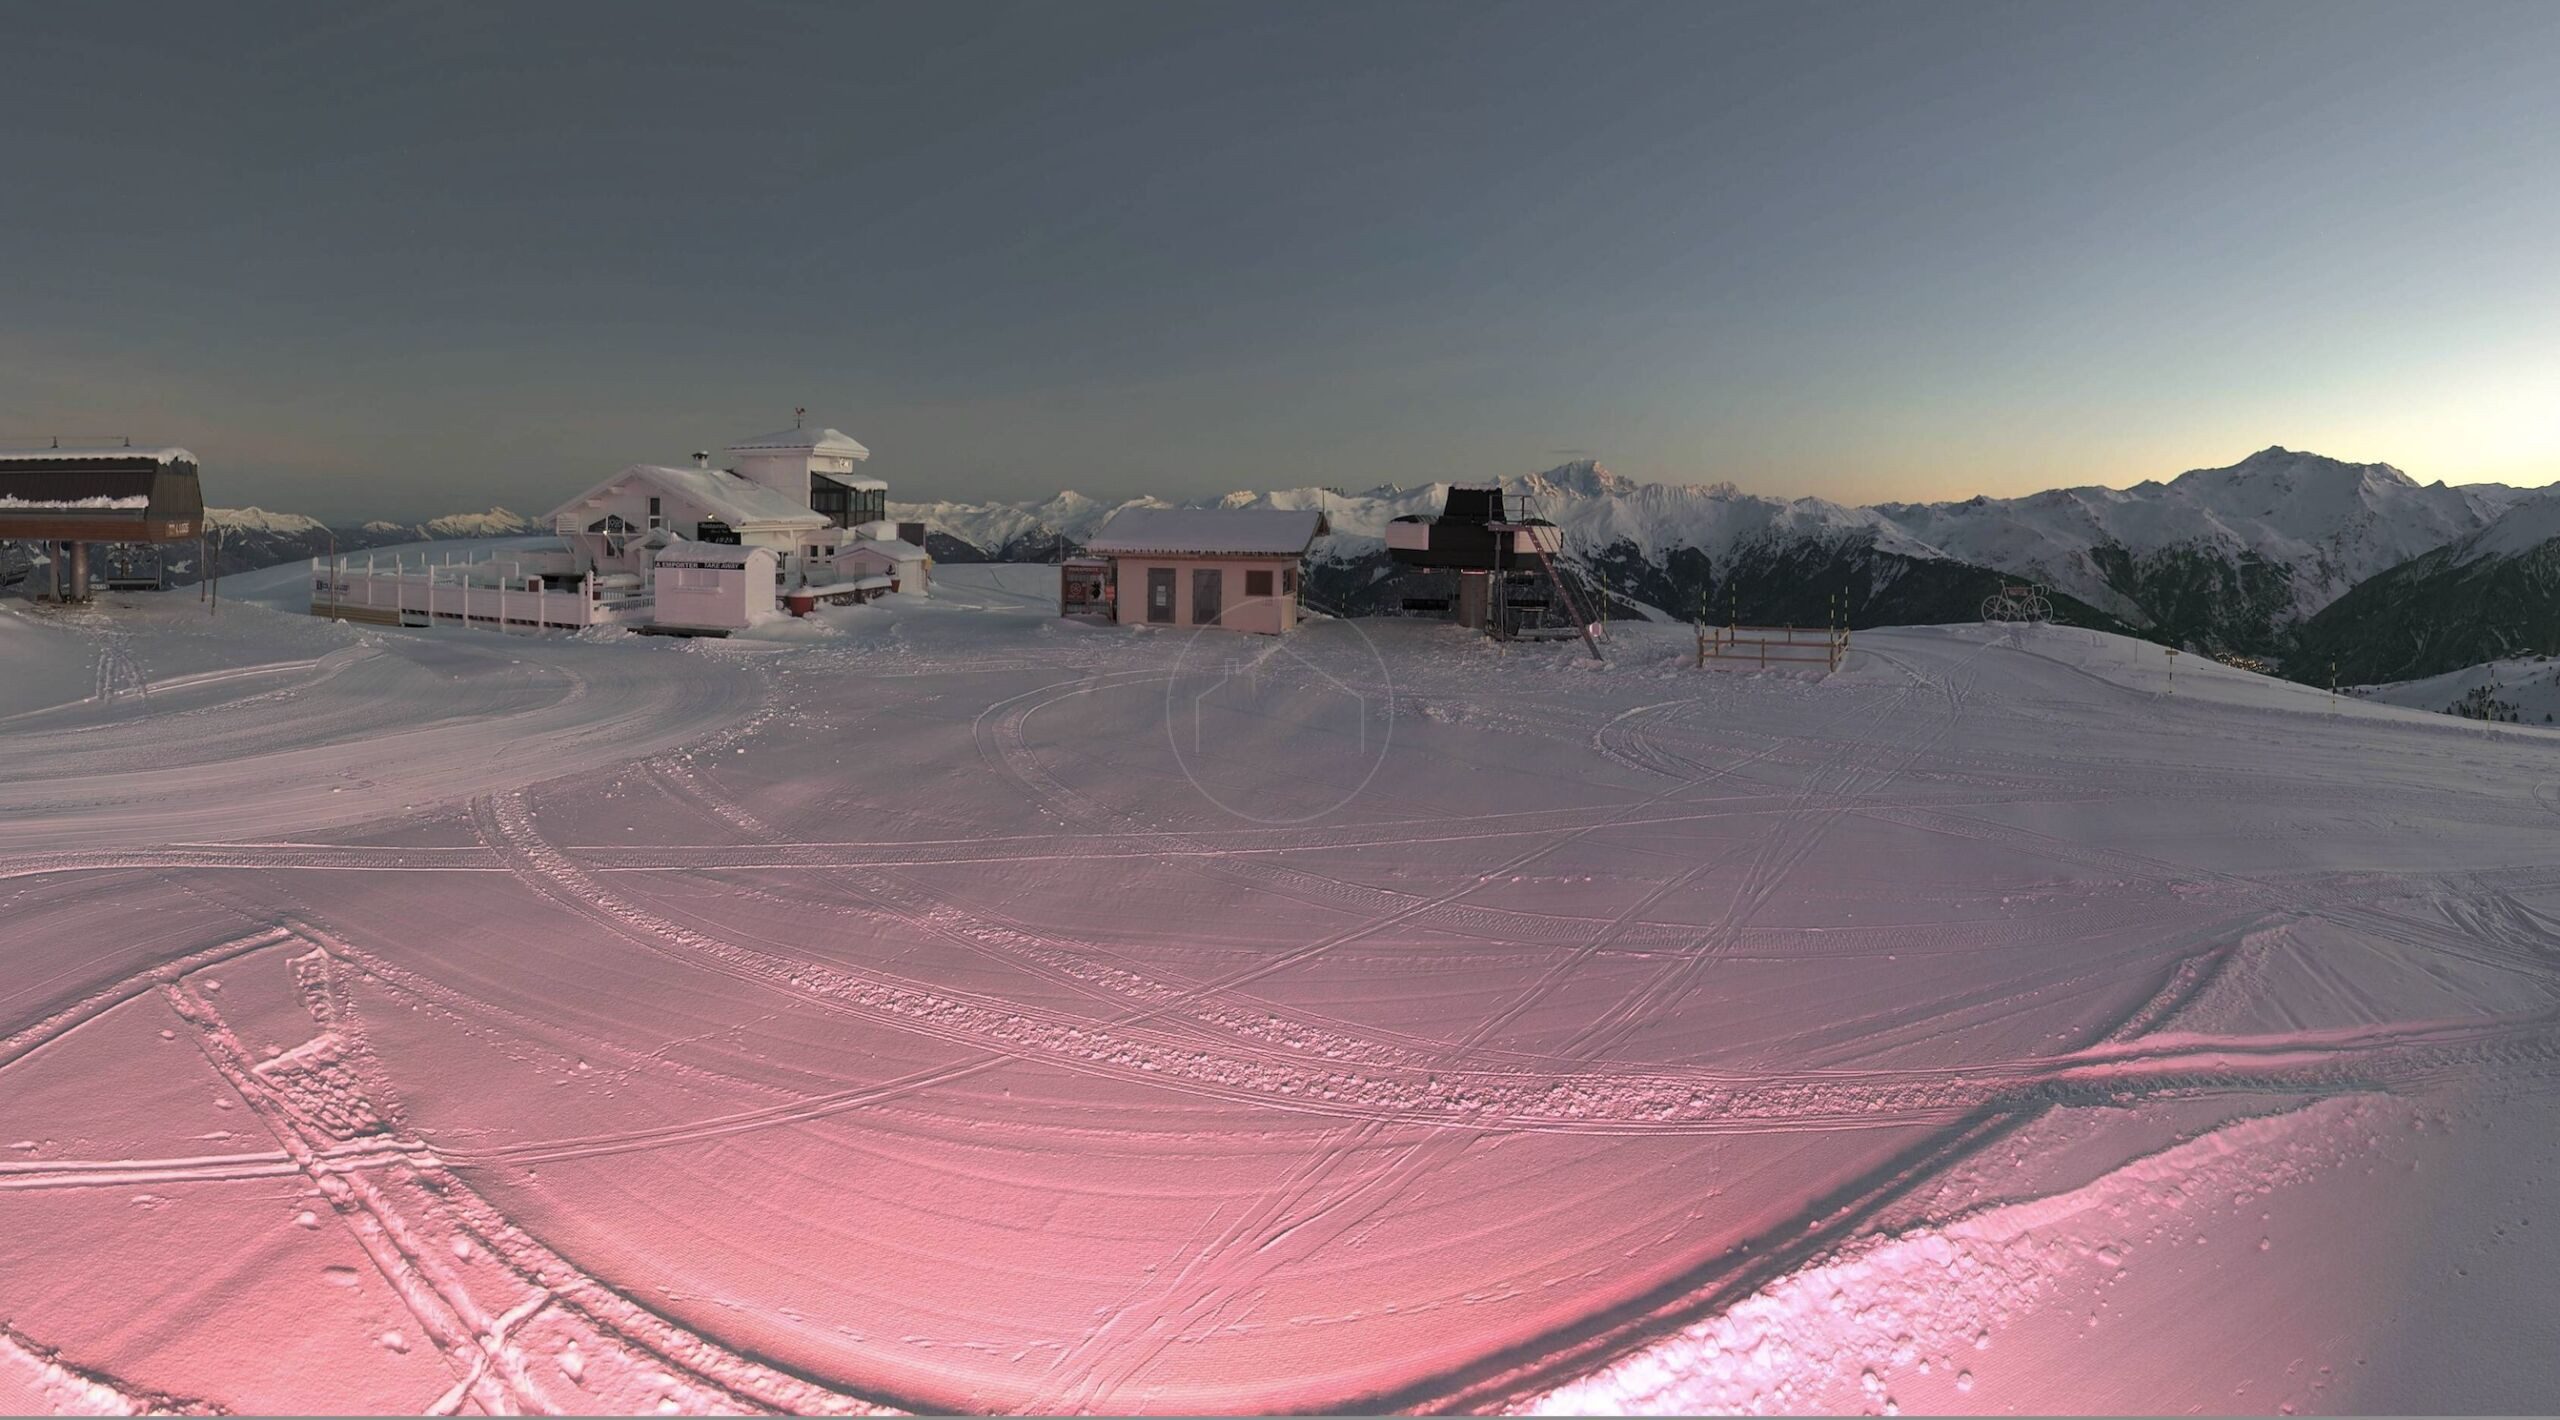 Domosno ski property meribel col de la loze 2304m 3 valleys snow